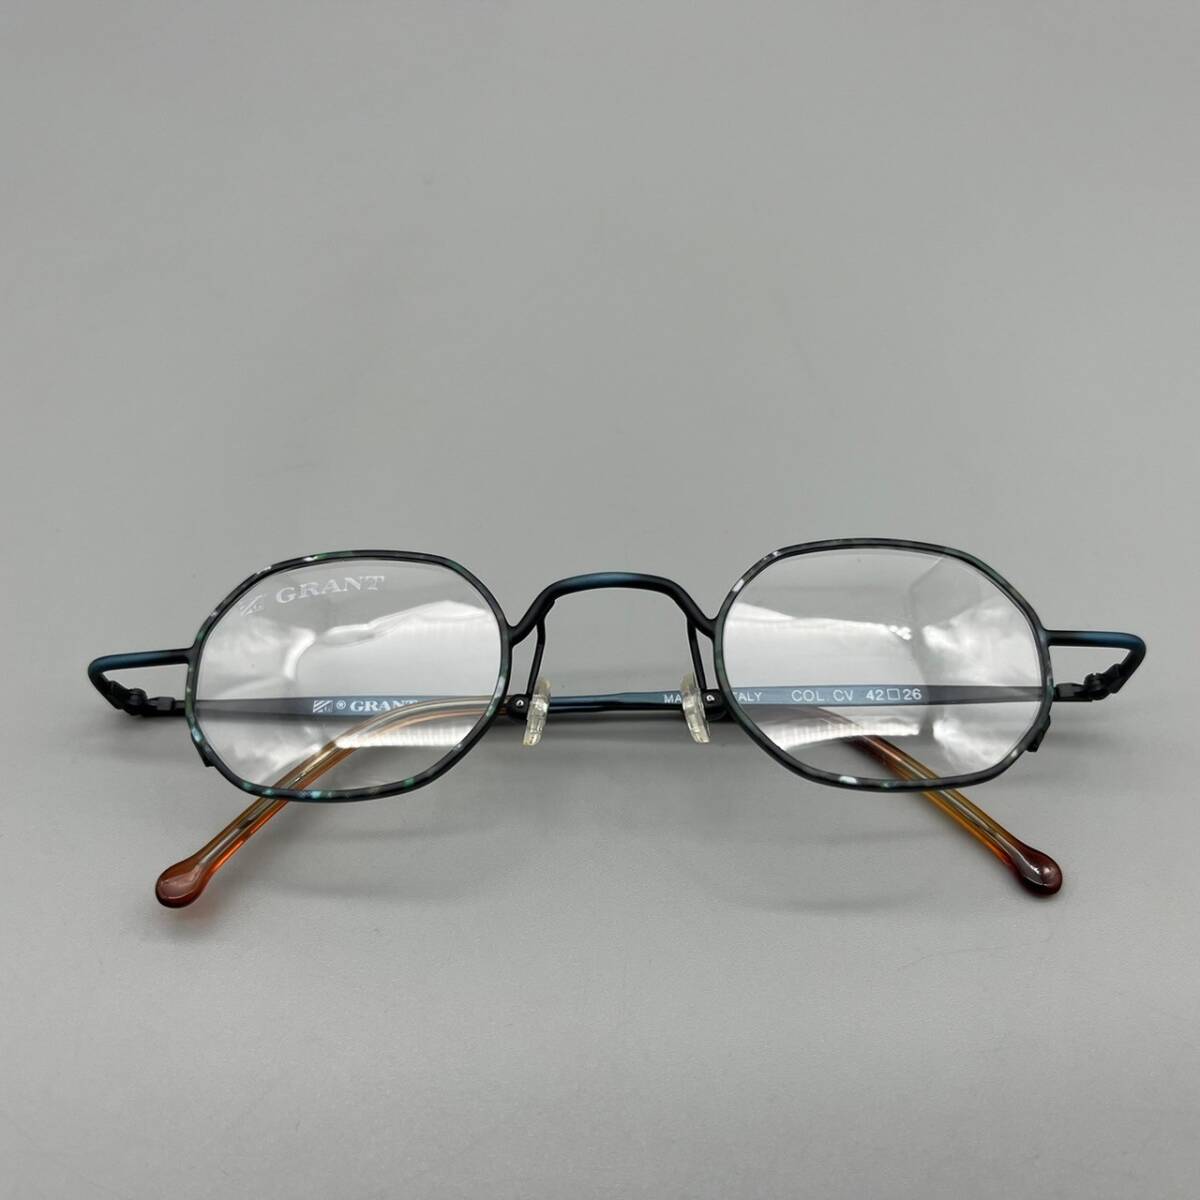 GRANT グラント 5266 眼鏡 フレーム COL. CV イタリア製 42□26 めがね メガネ 管:050601の画像7